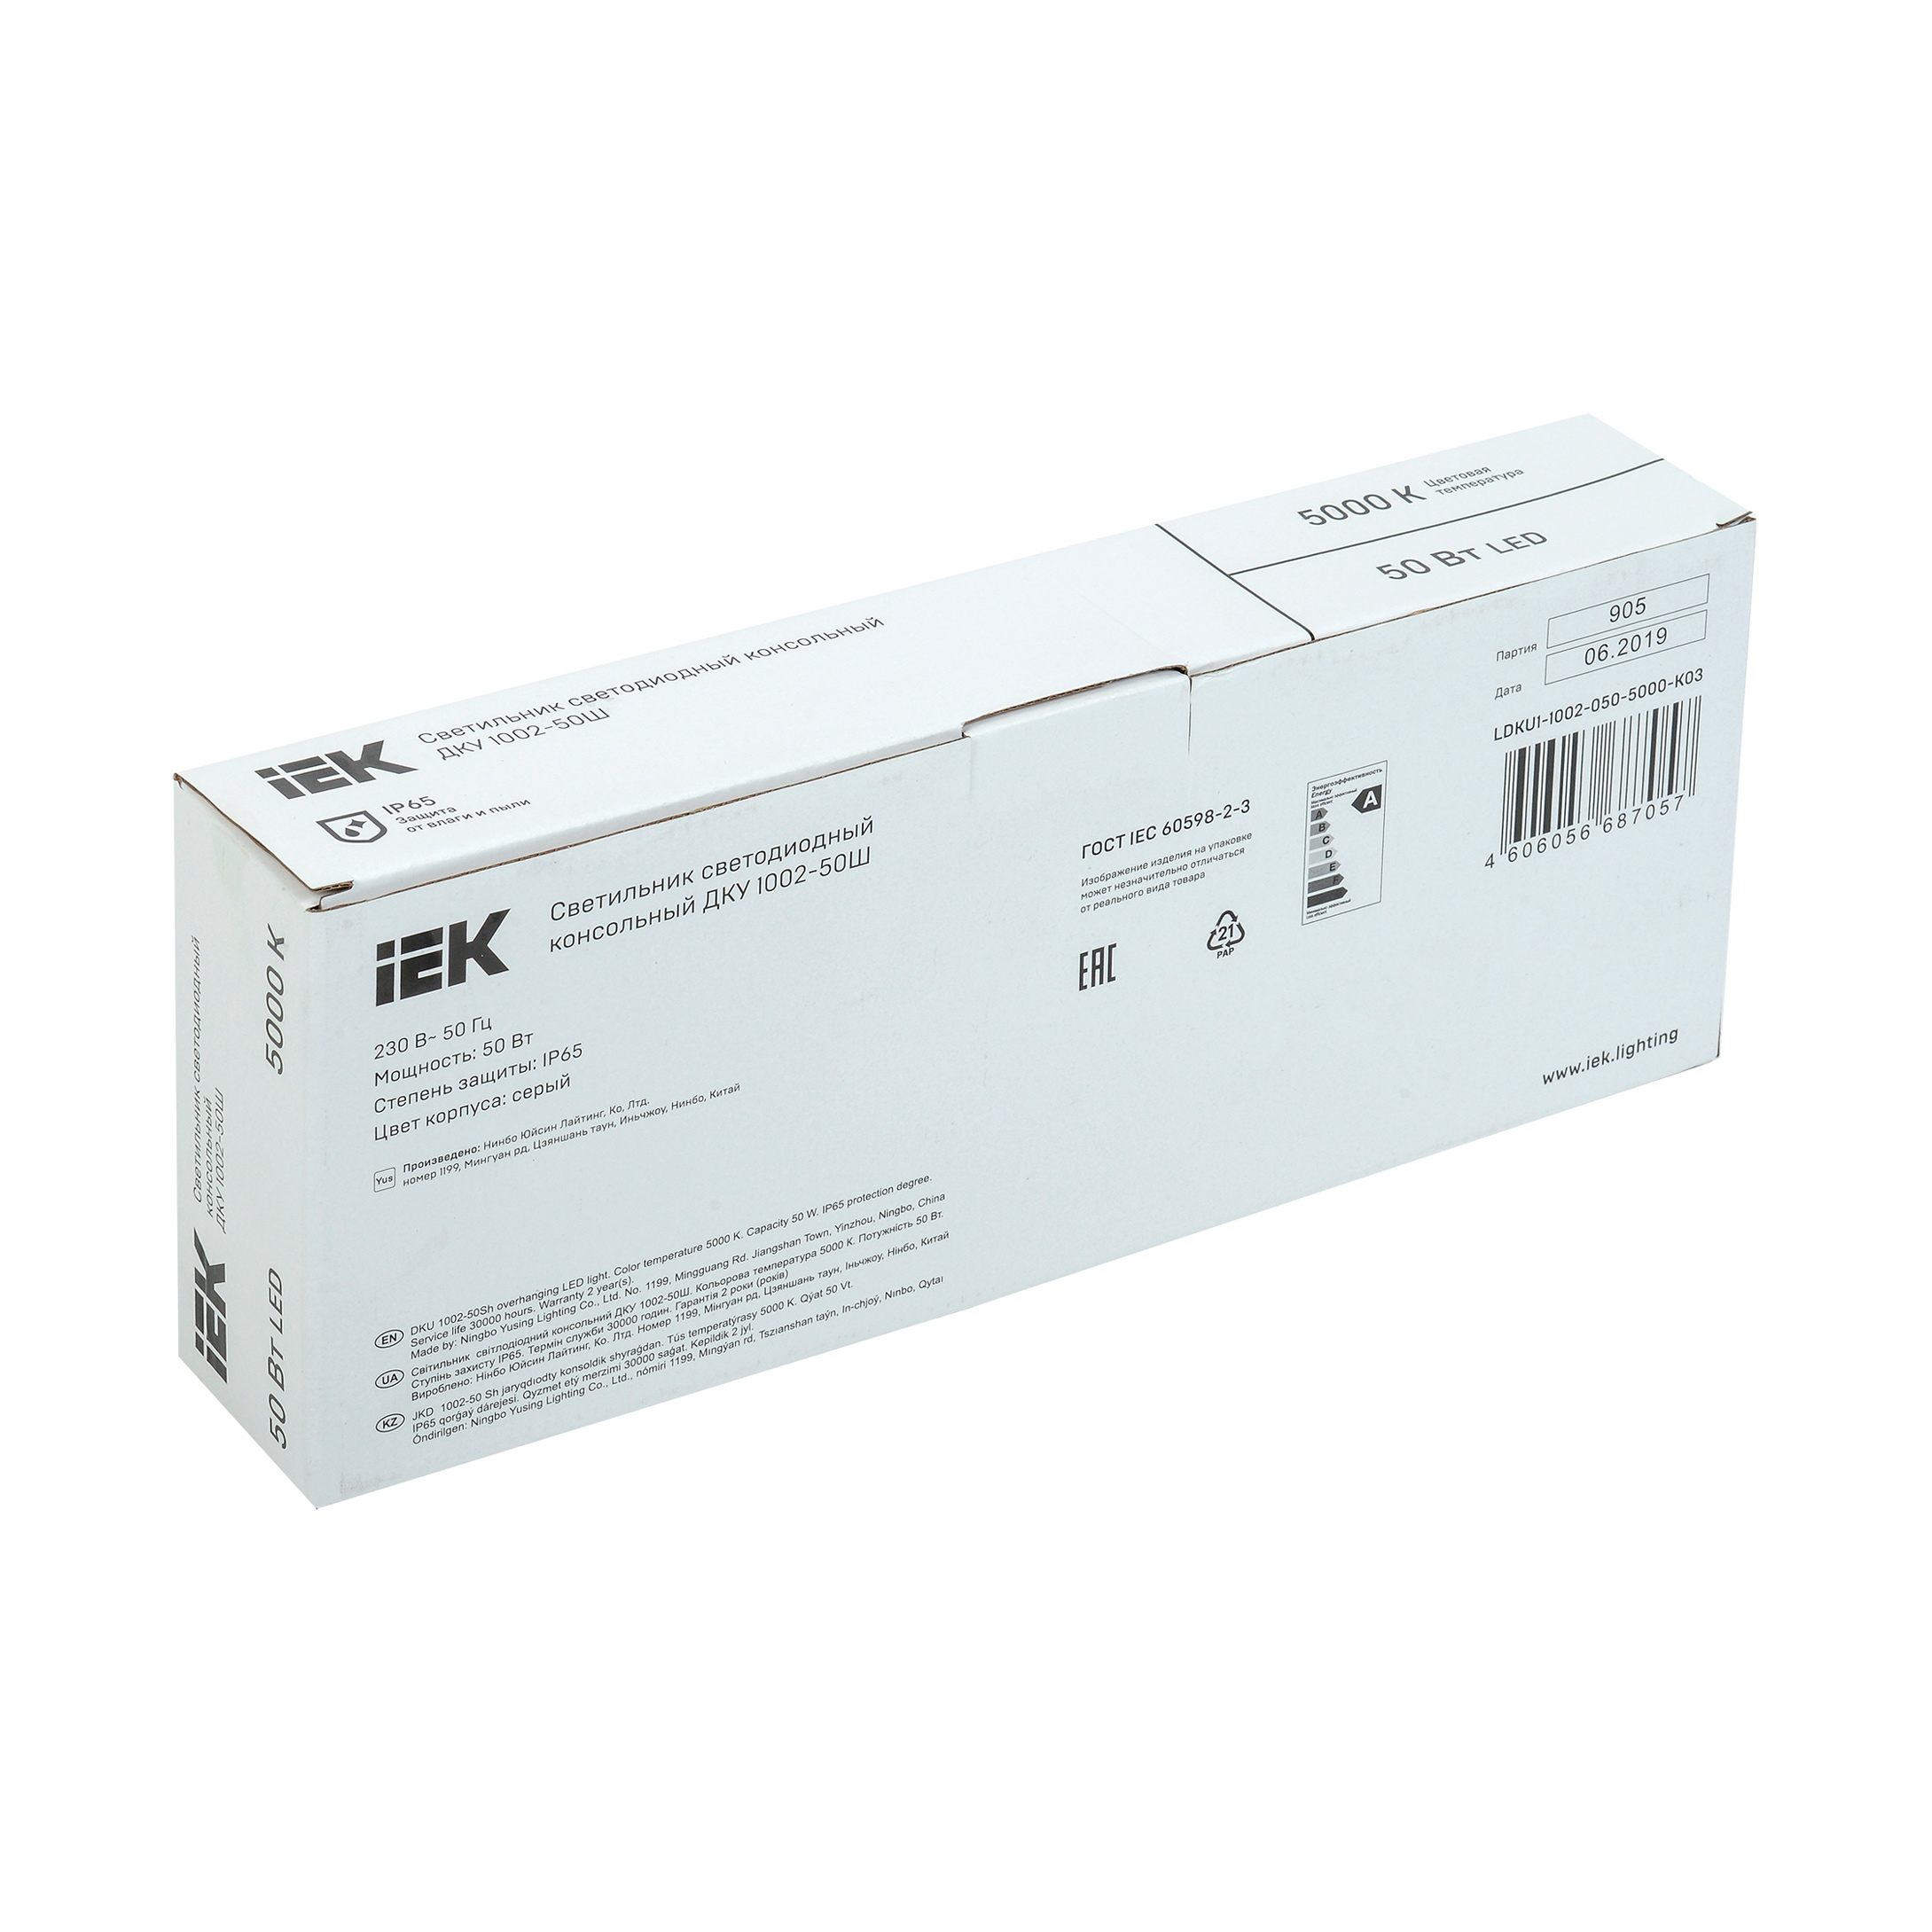 Светильник светодиодный консольный ДКУ 1002-50Ш 5000К IP65 серый IEK